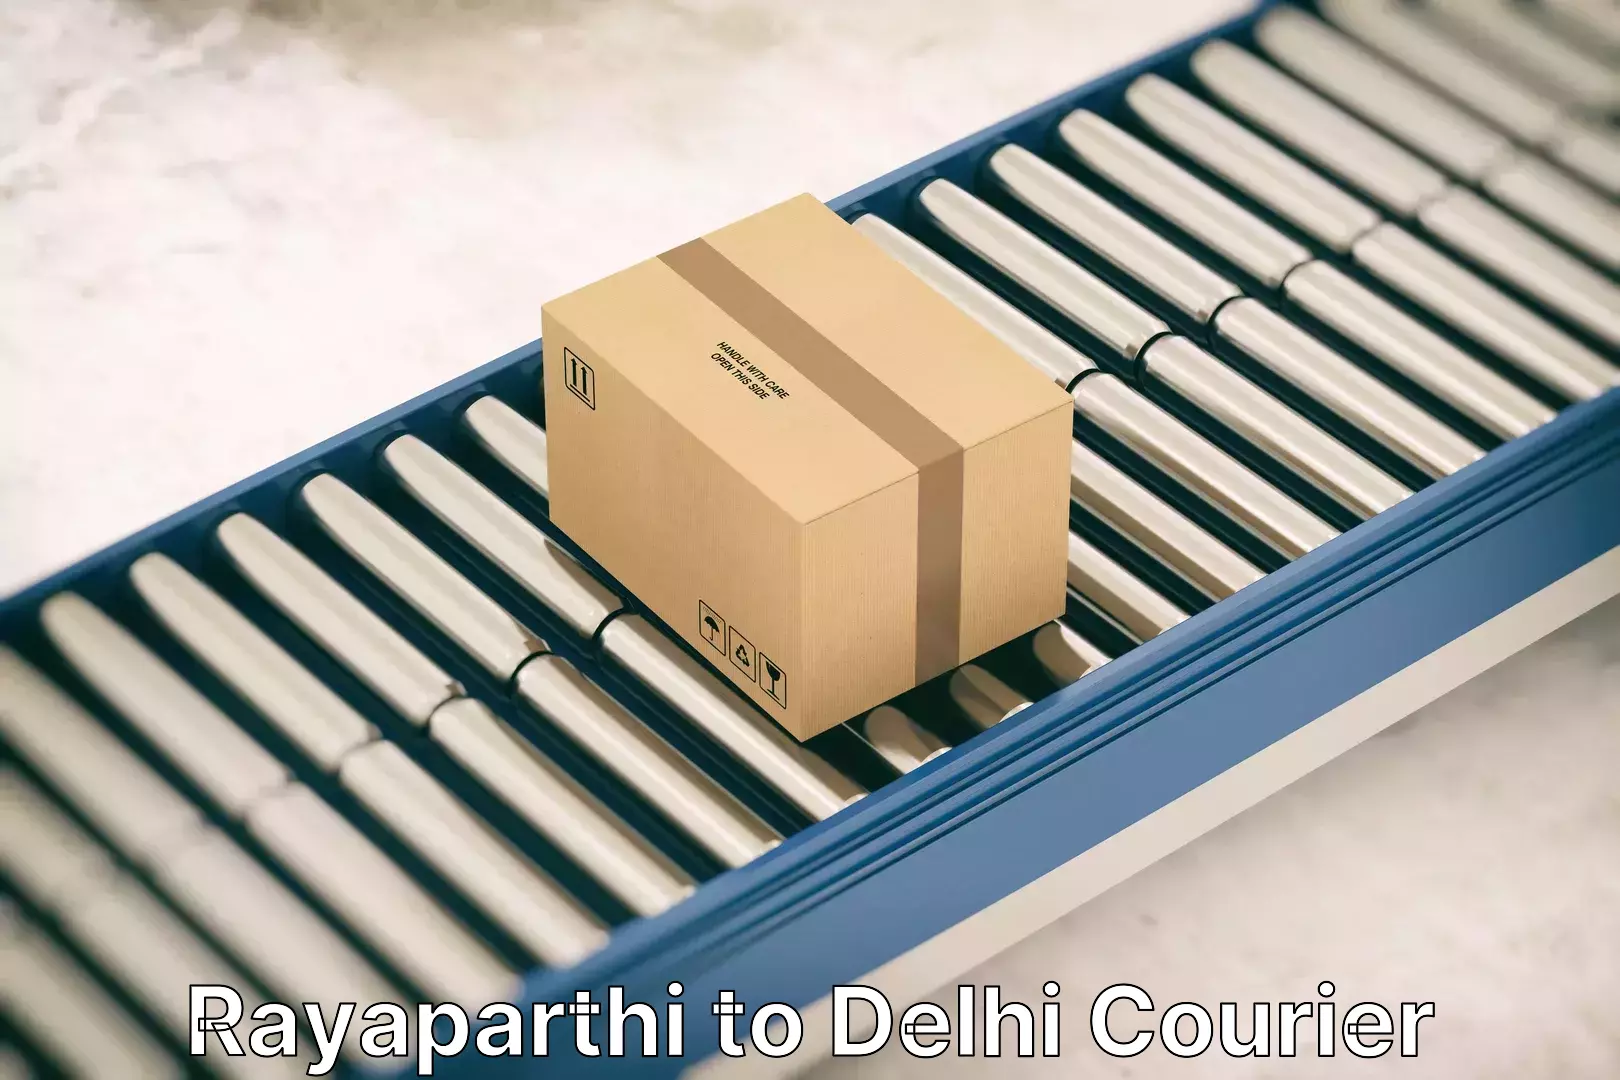 Home goods moving company Rayaparthi to Delhi